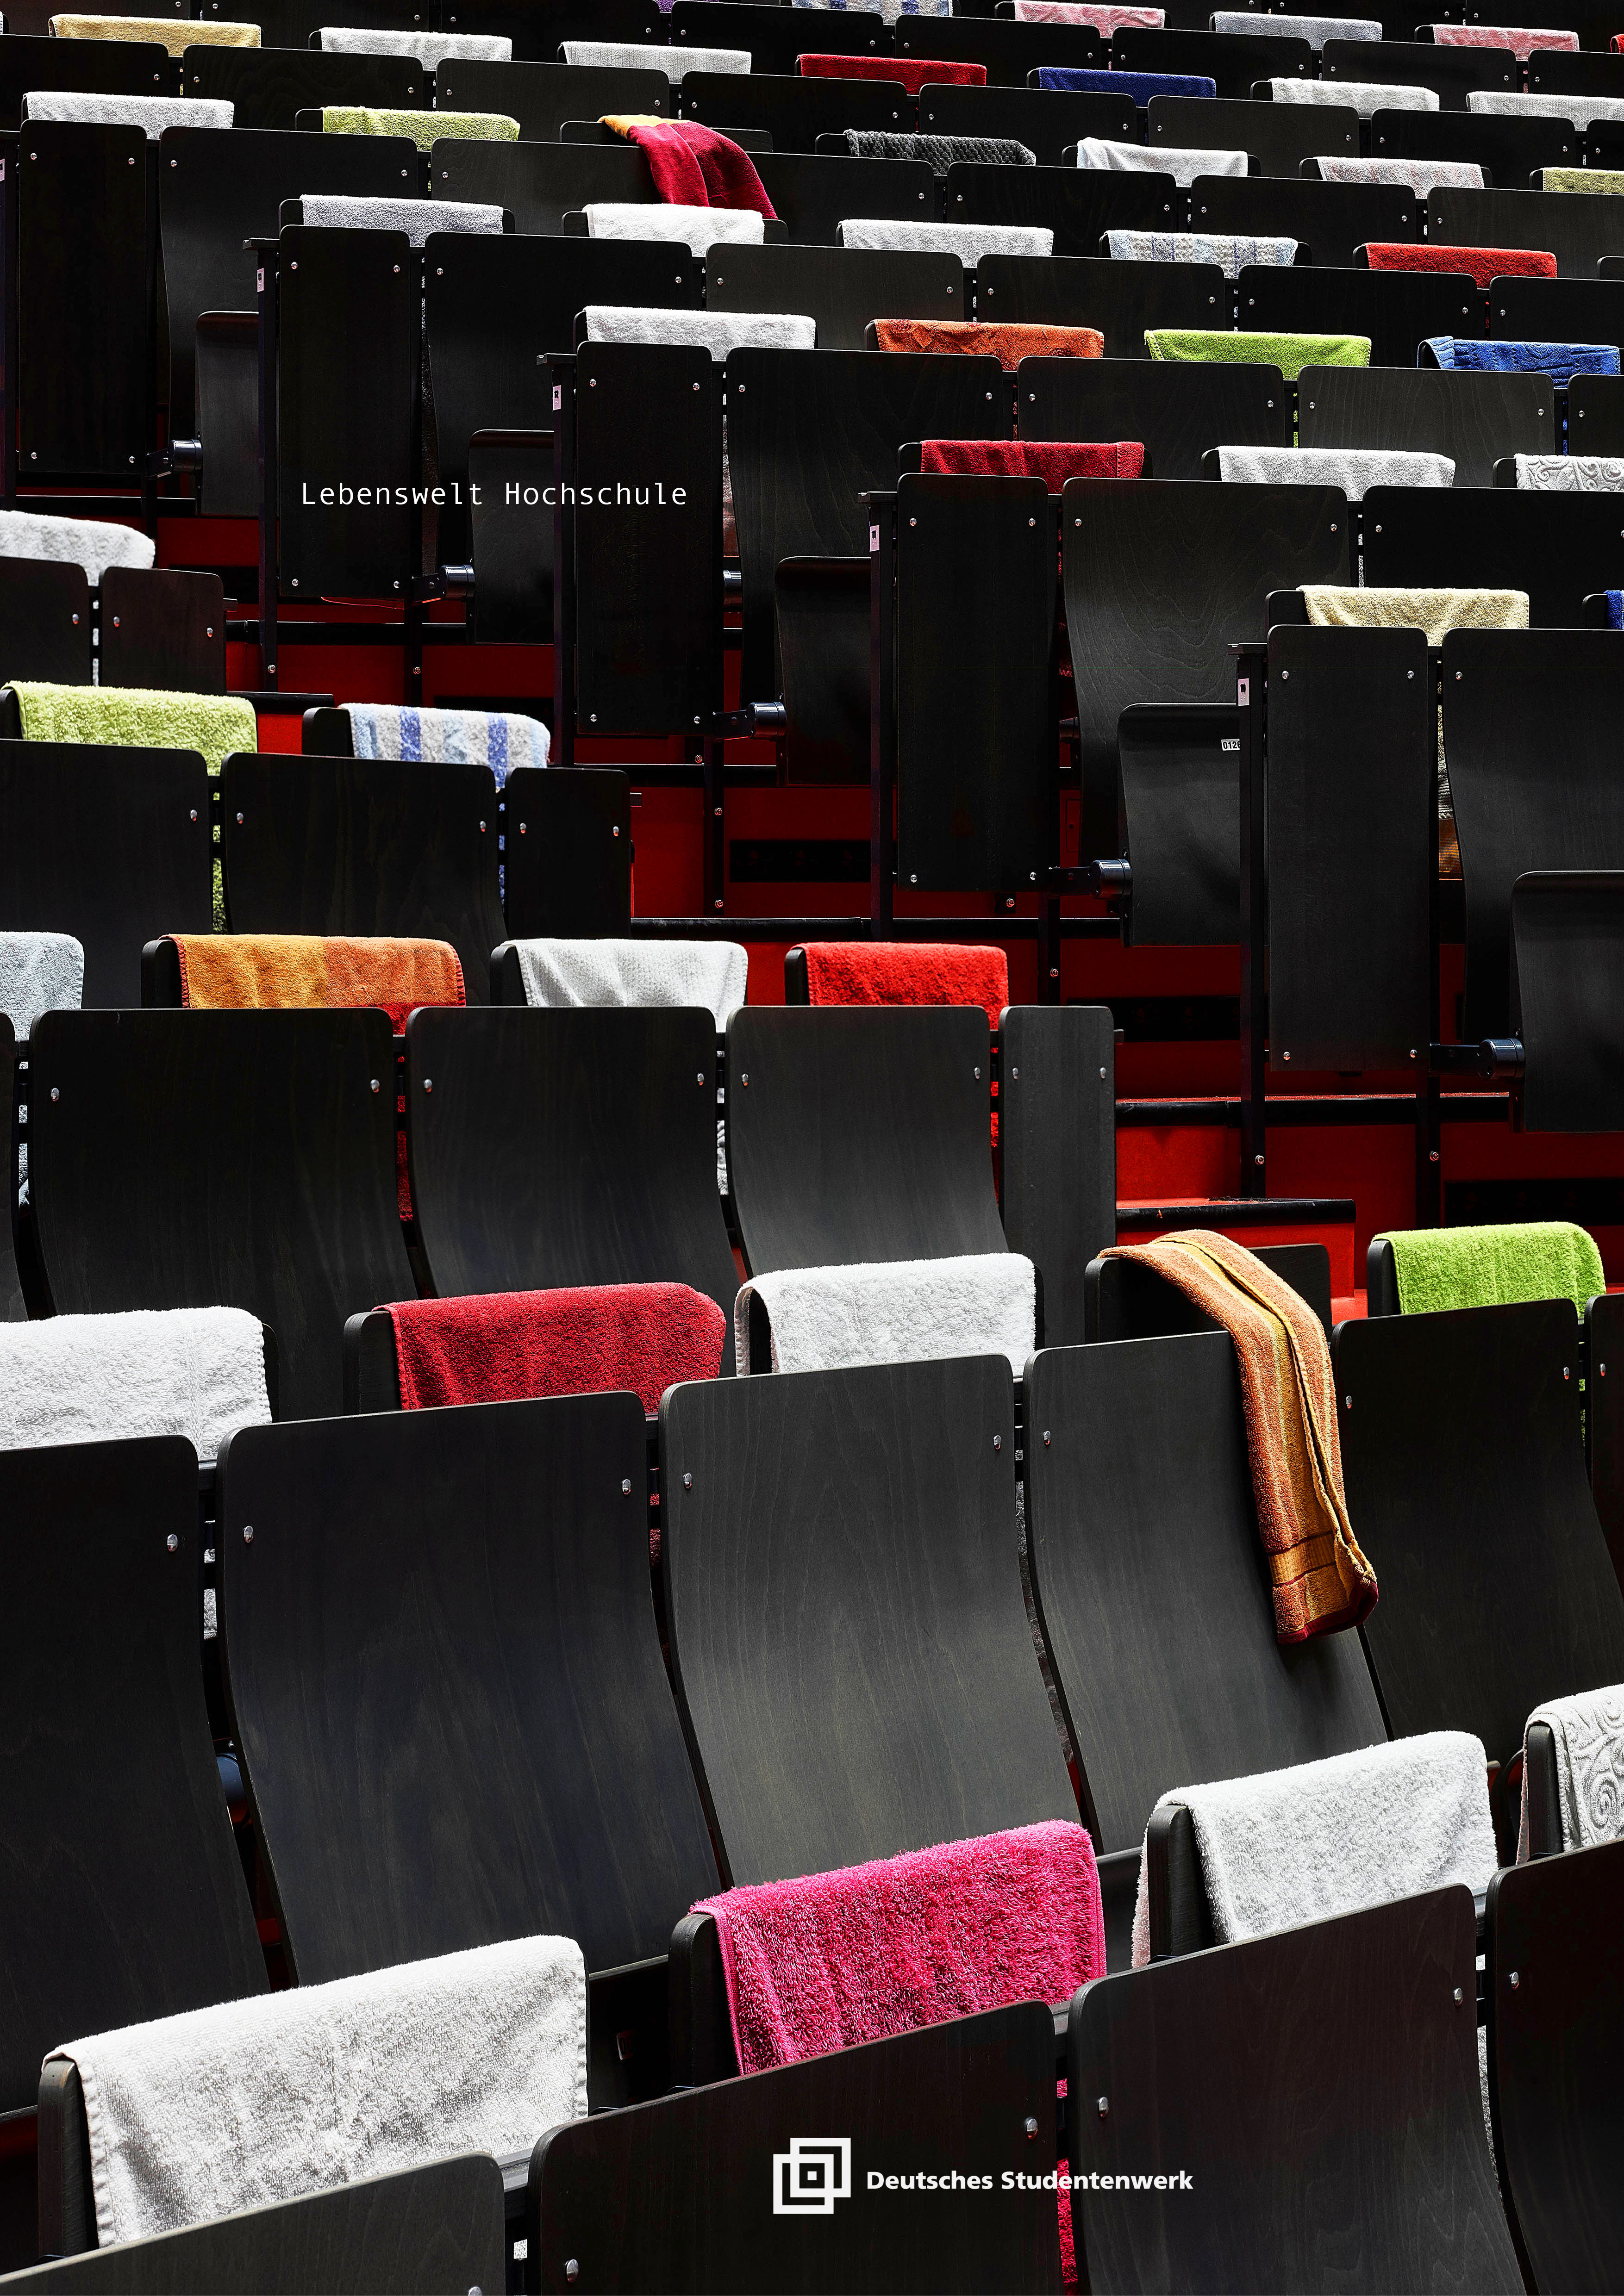 Plakatentwurf: Ein Hörsaal, in dem die einZelnen Stühle mit Handtüchern reserviert sind.